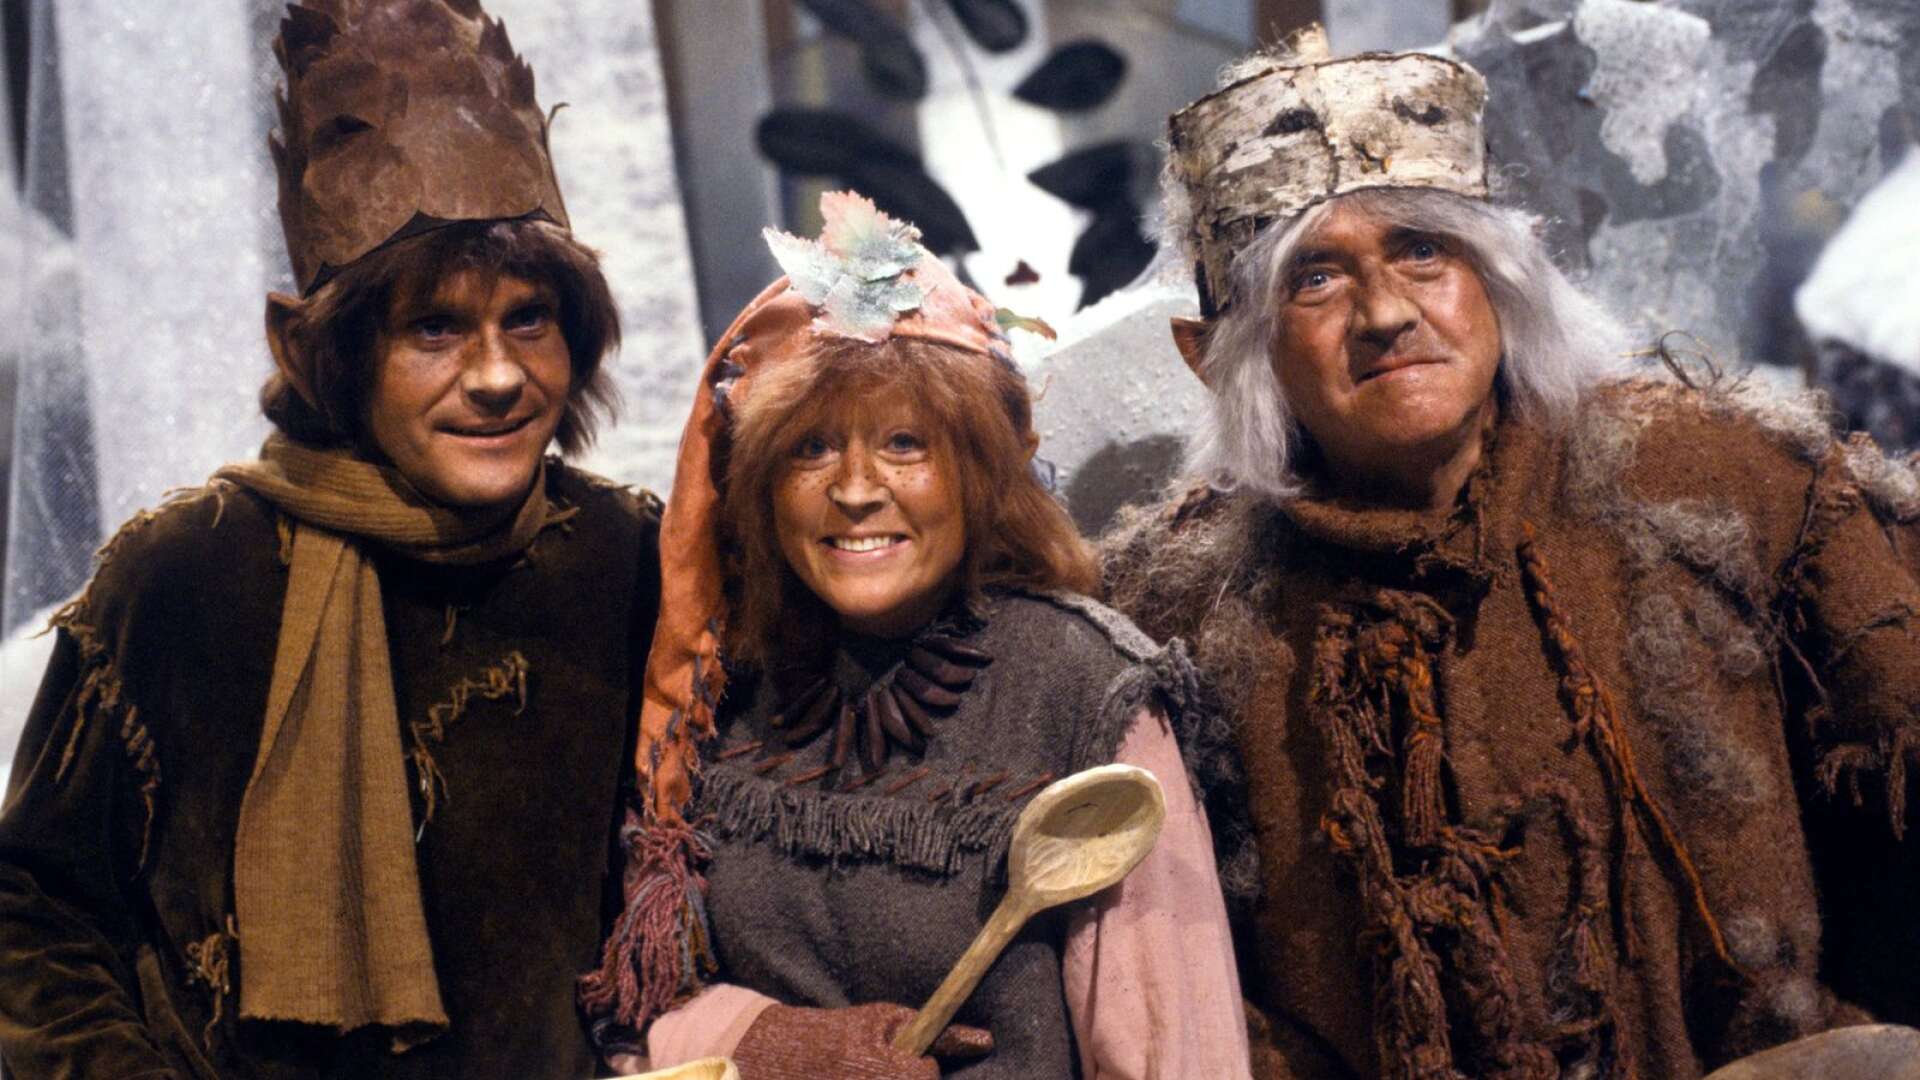 Trolltider gick första gången 1979 och i repris sex år senare, 1985. Här med skådespelarna Ted Åström, Birgitta Andersson och Stig Järrel.